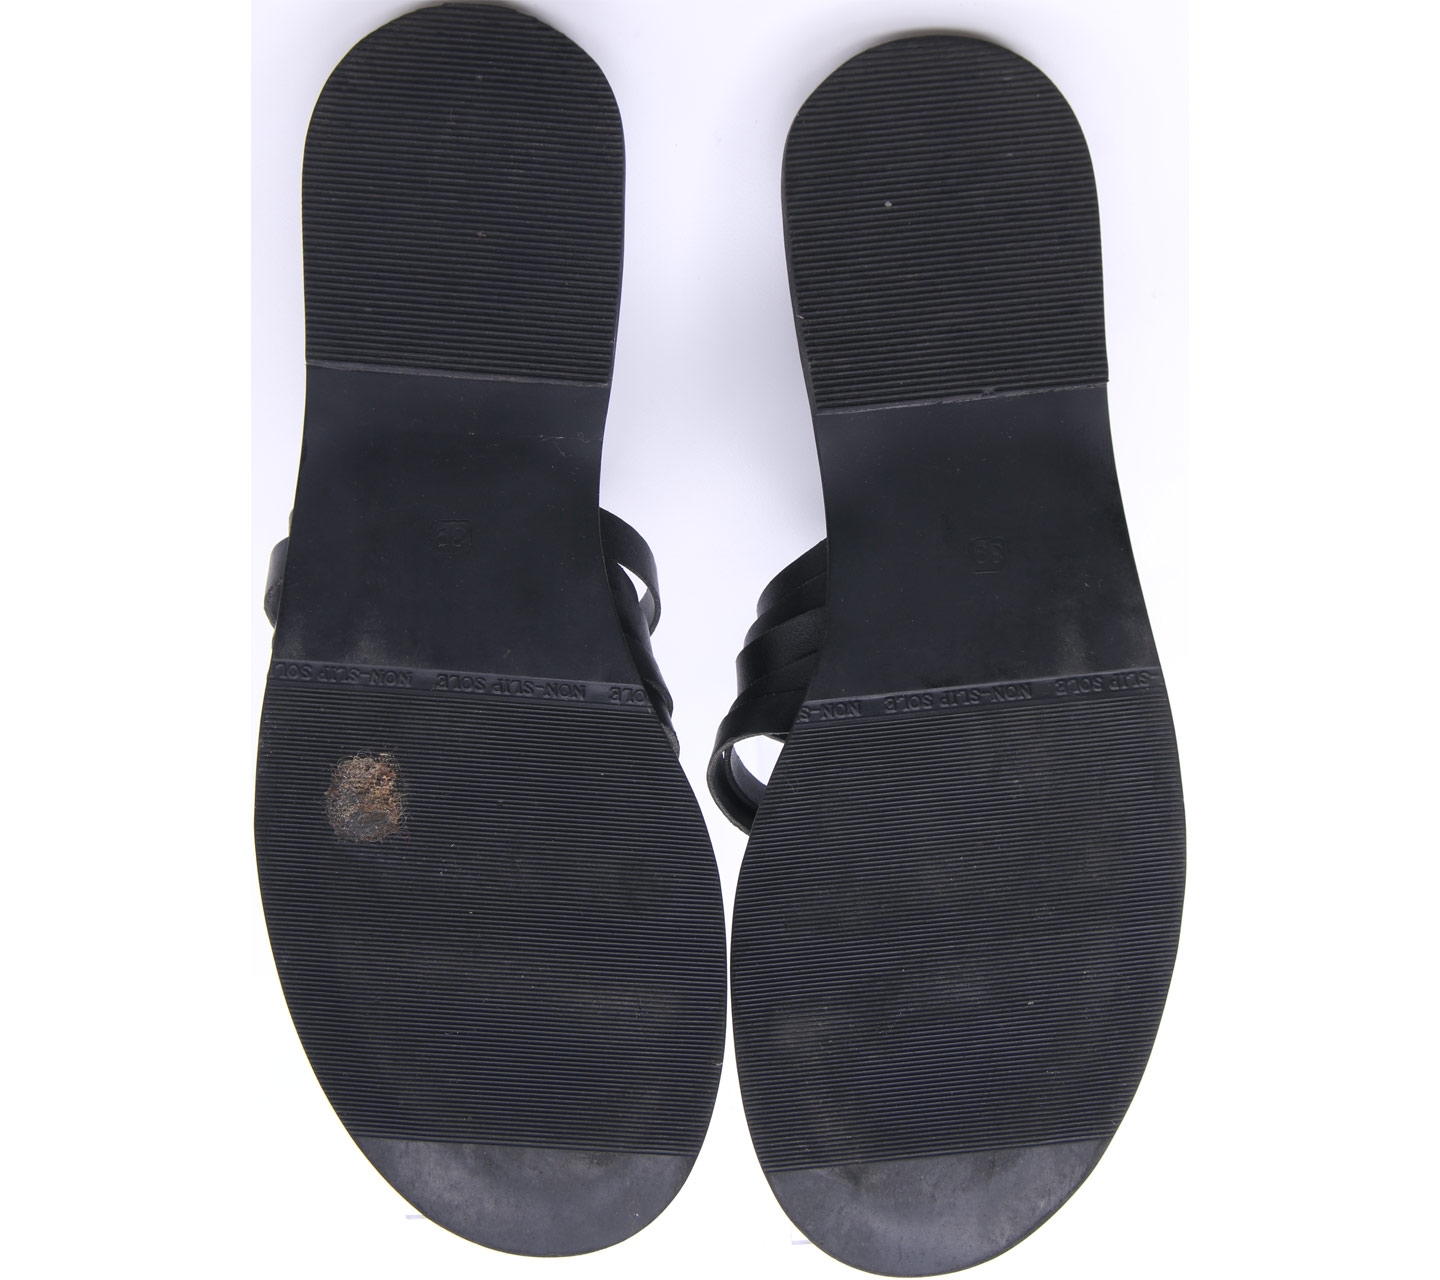 Protea Black Sandals